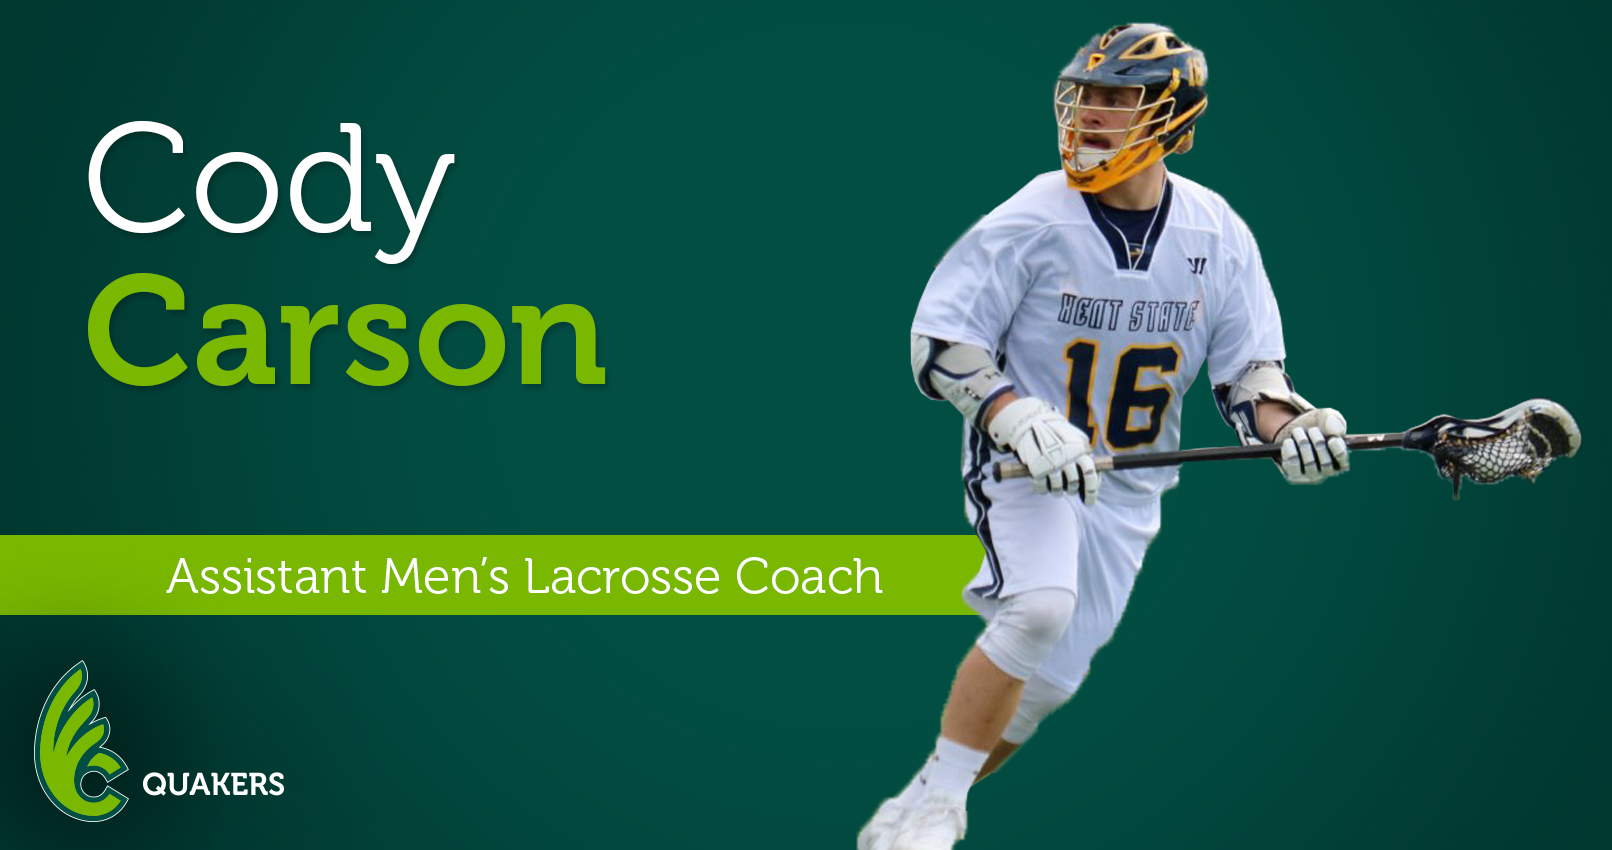 Cody Carson Joins Men's Lacrosse Program as Assistant Coach